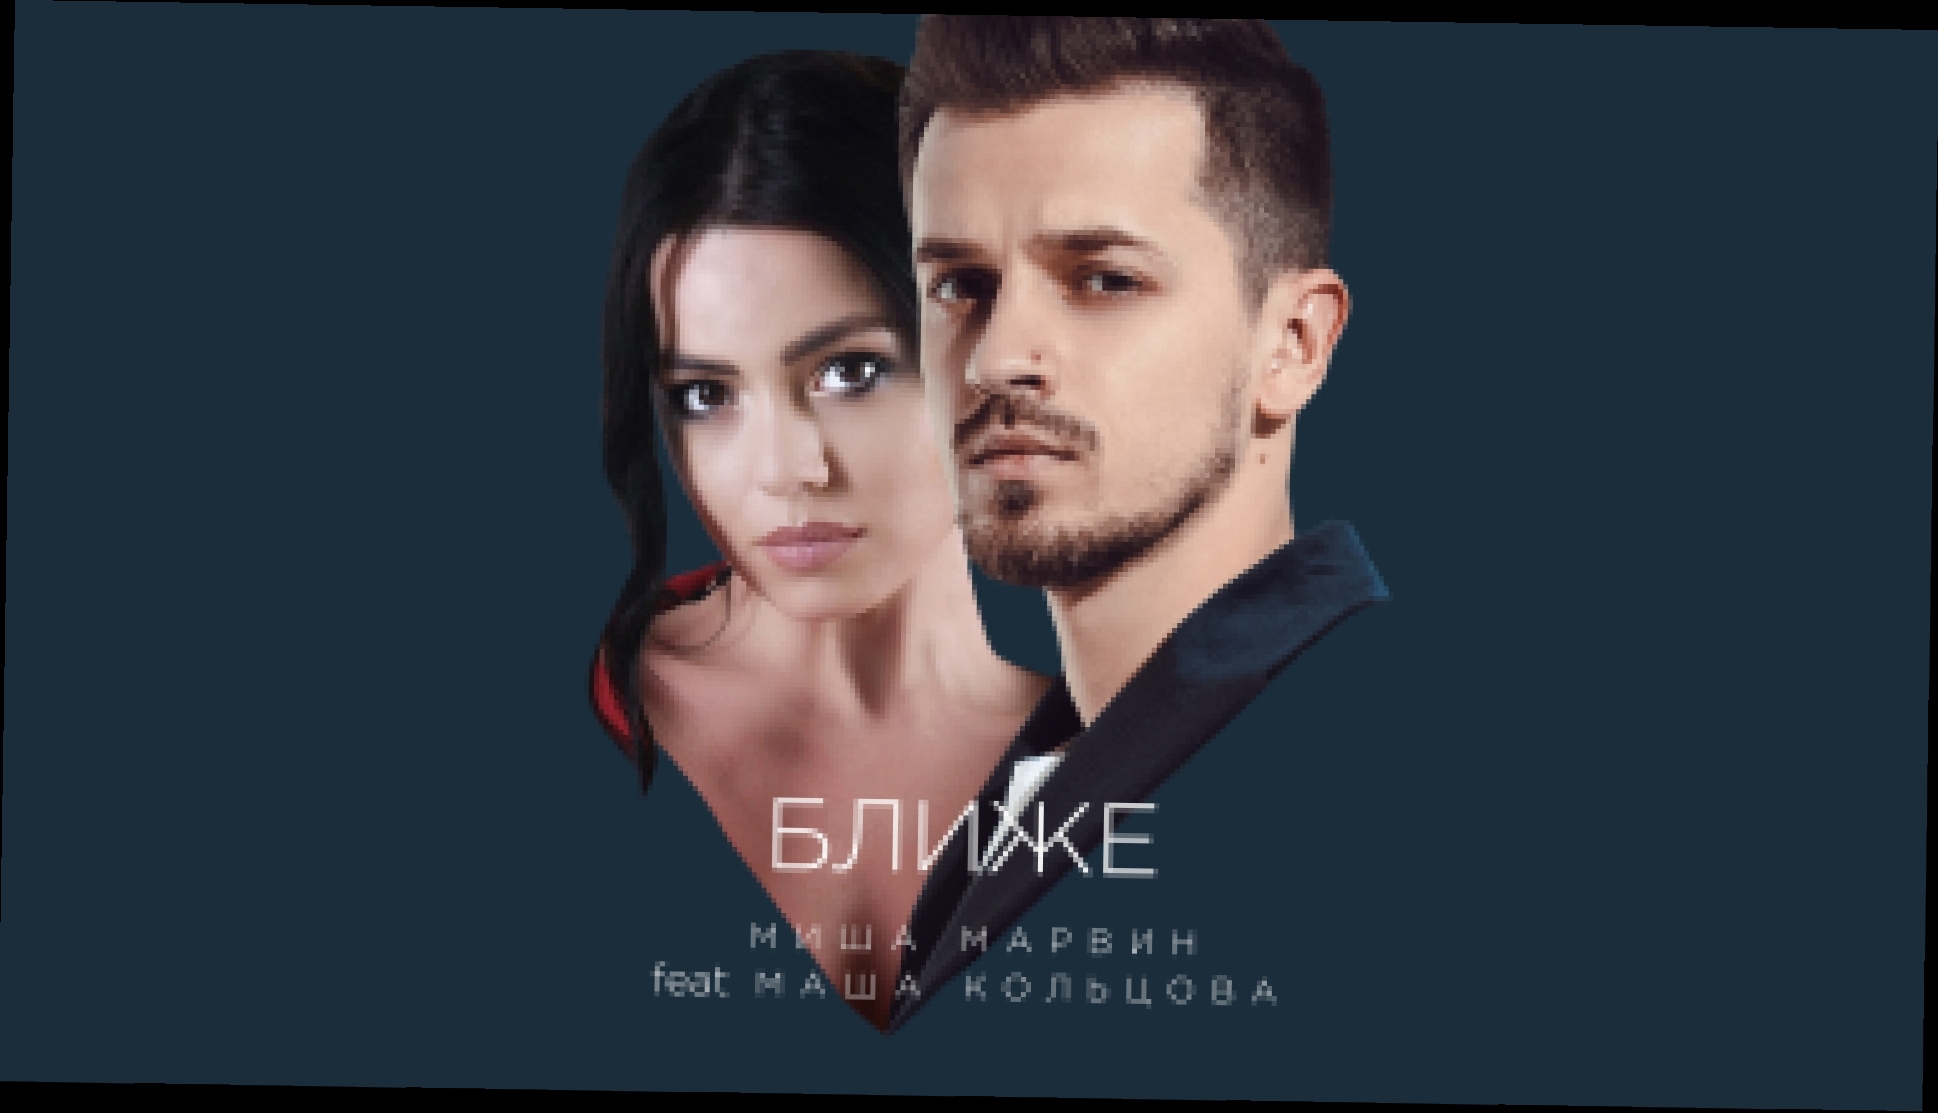 Миша Марвин feat. Маша Кольцова - Ближе (премьера трека, 2018) - видеоклип на песню